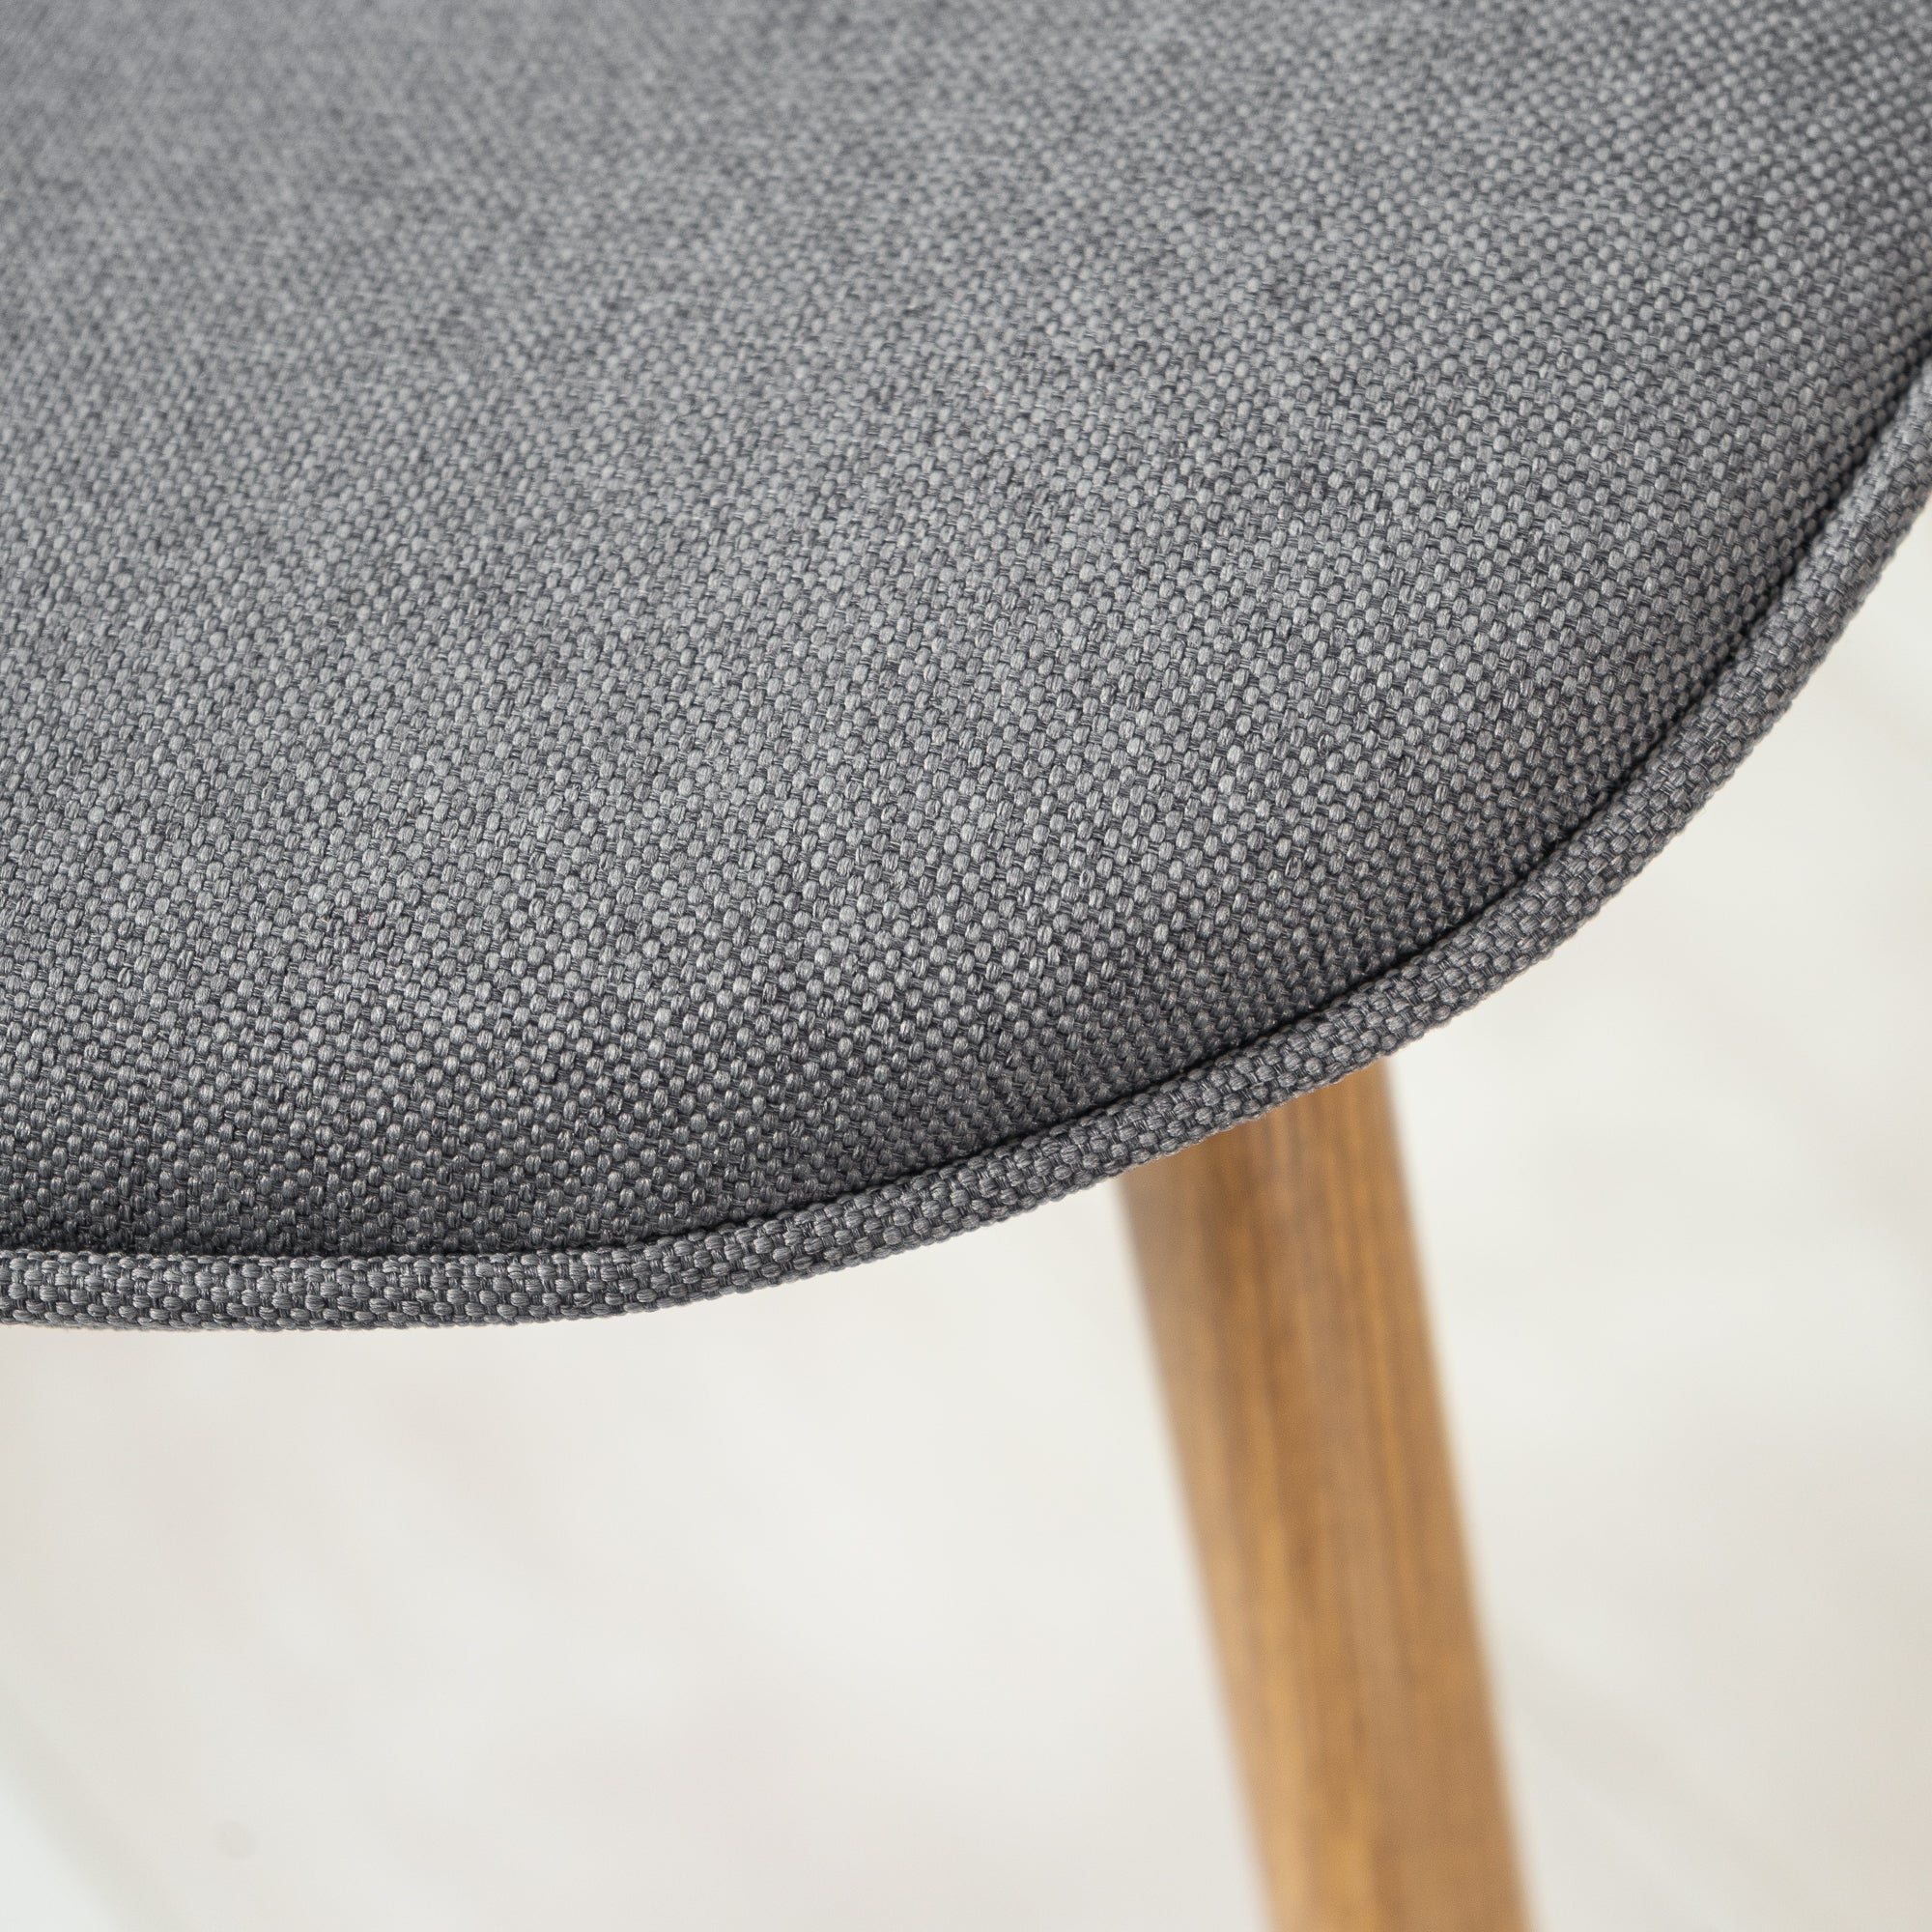 Lot de 4 chaises en tissu design pour salle à manger - CHARLTON – furnish1